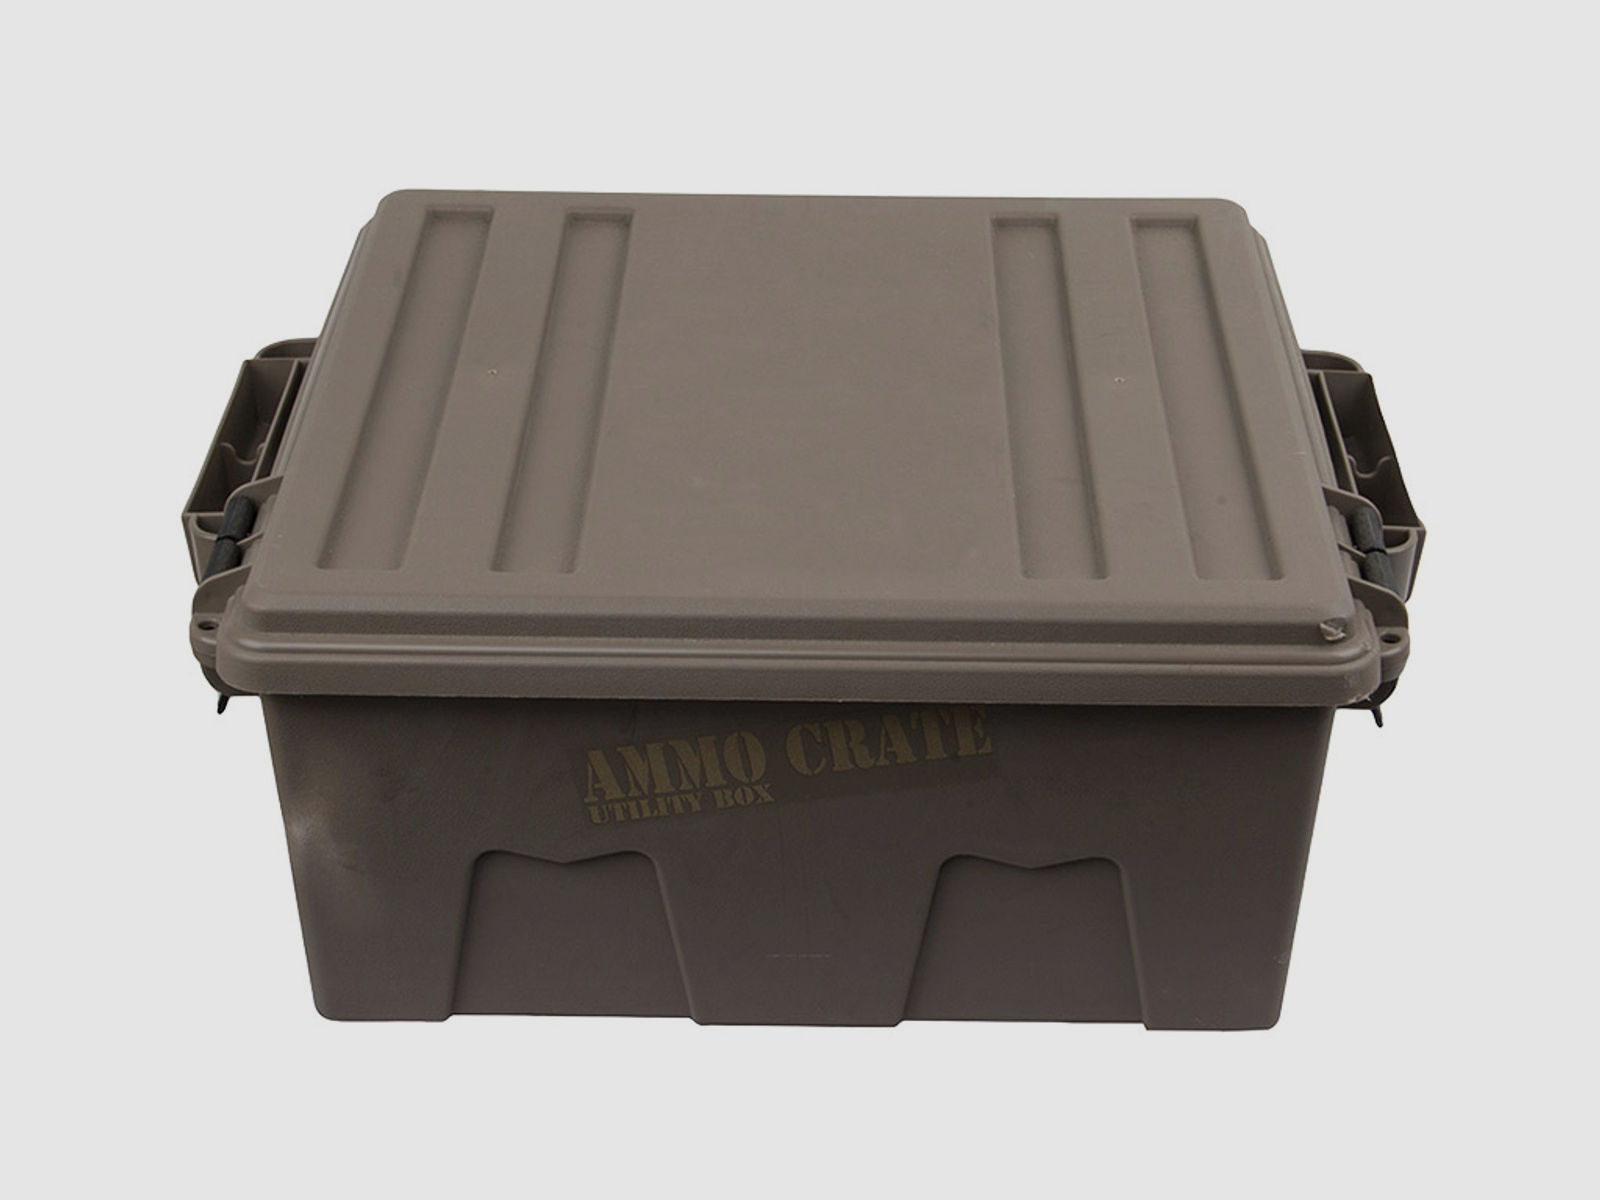 Munitionskiste Aufbewahrungskiste MTM Ammo Crate Utility Box 48 x 40 x 20 cm wasserdicht earth dark